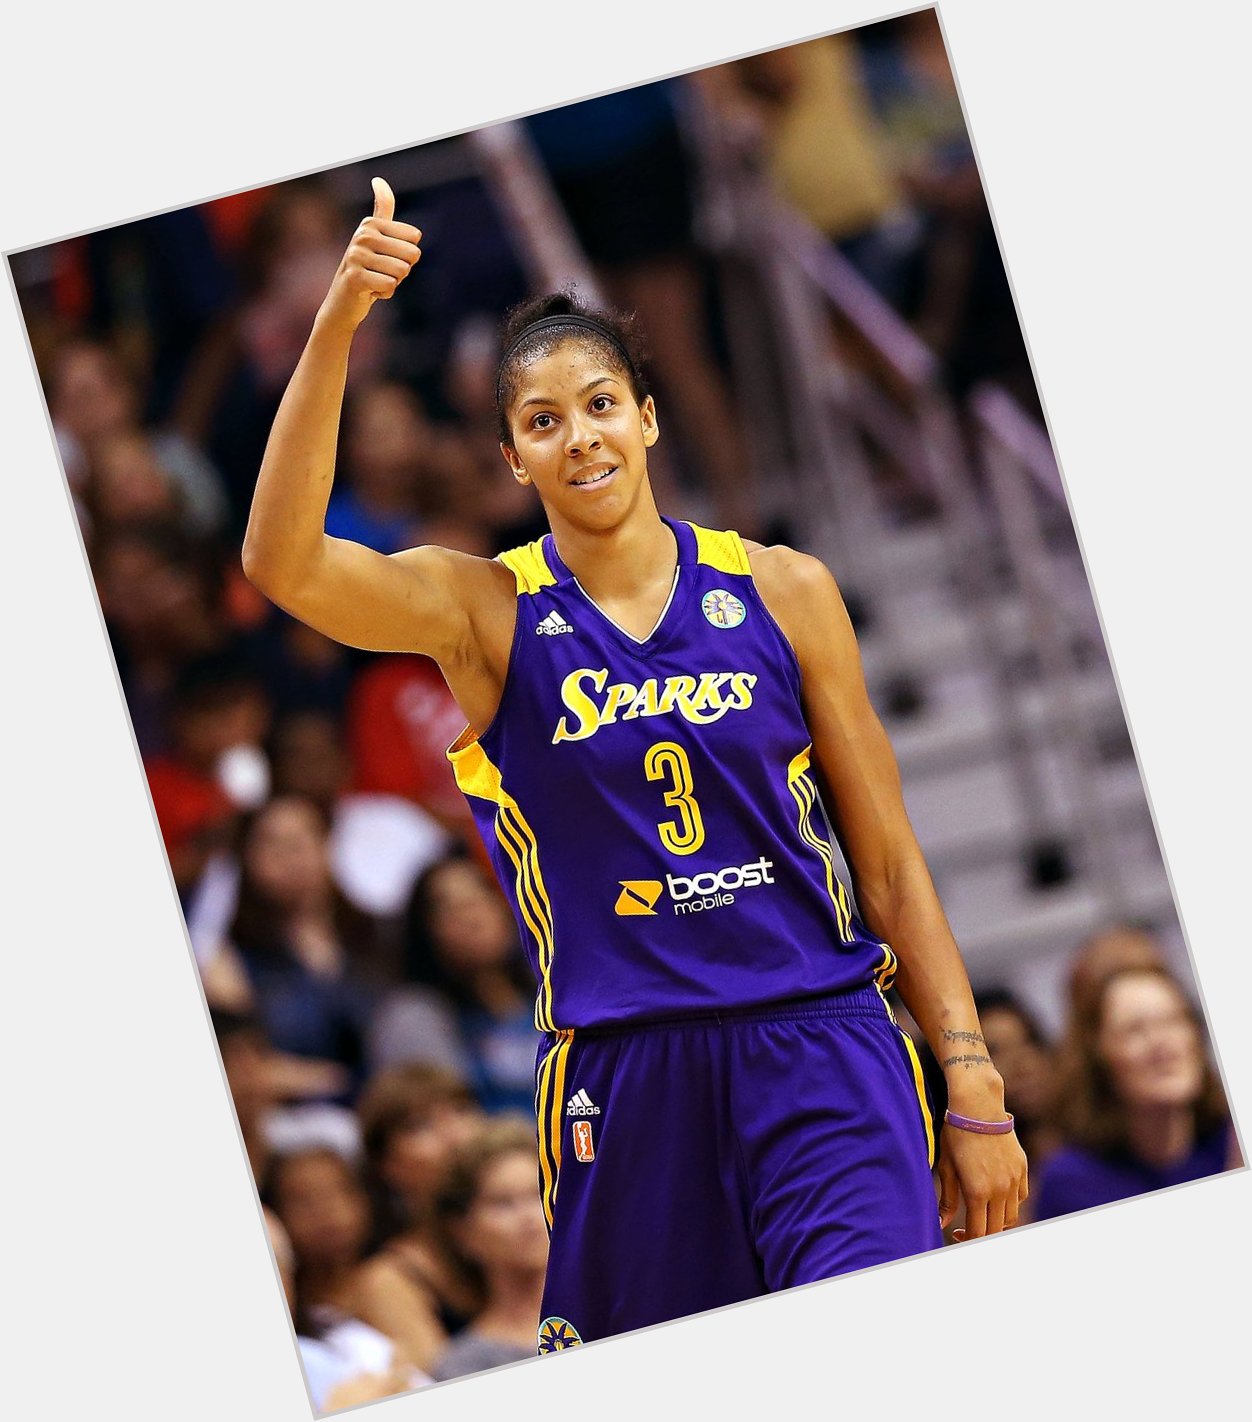 Happy Birthday to WNBA star 